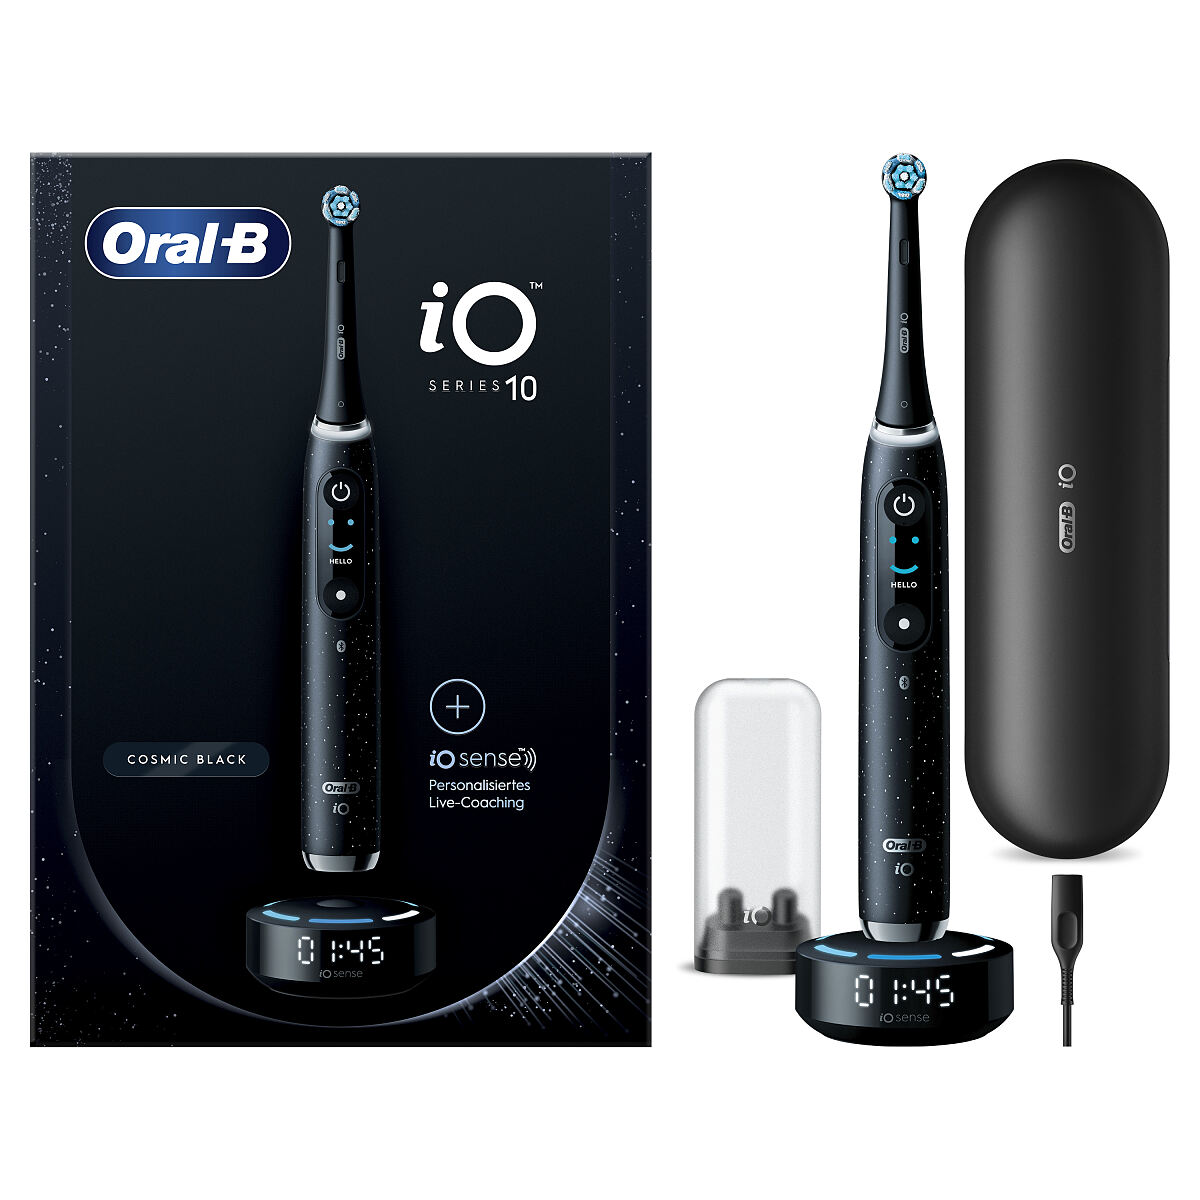 Oral-B iO10